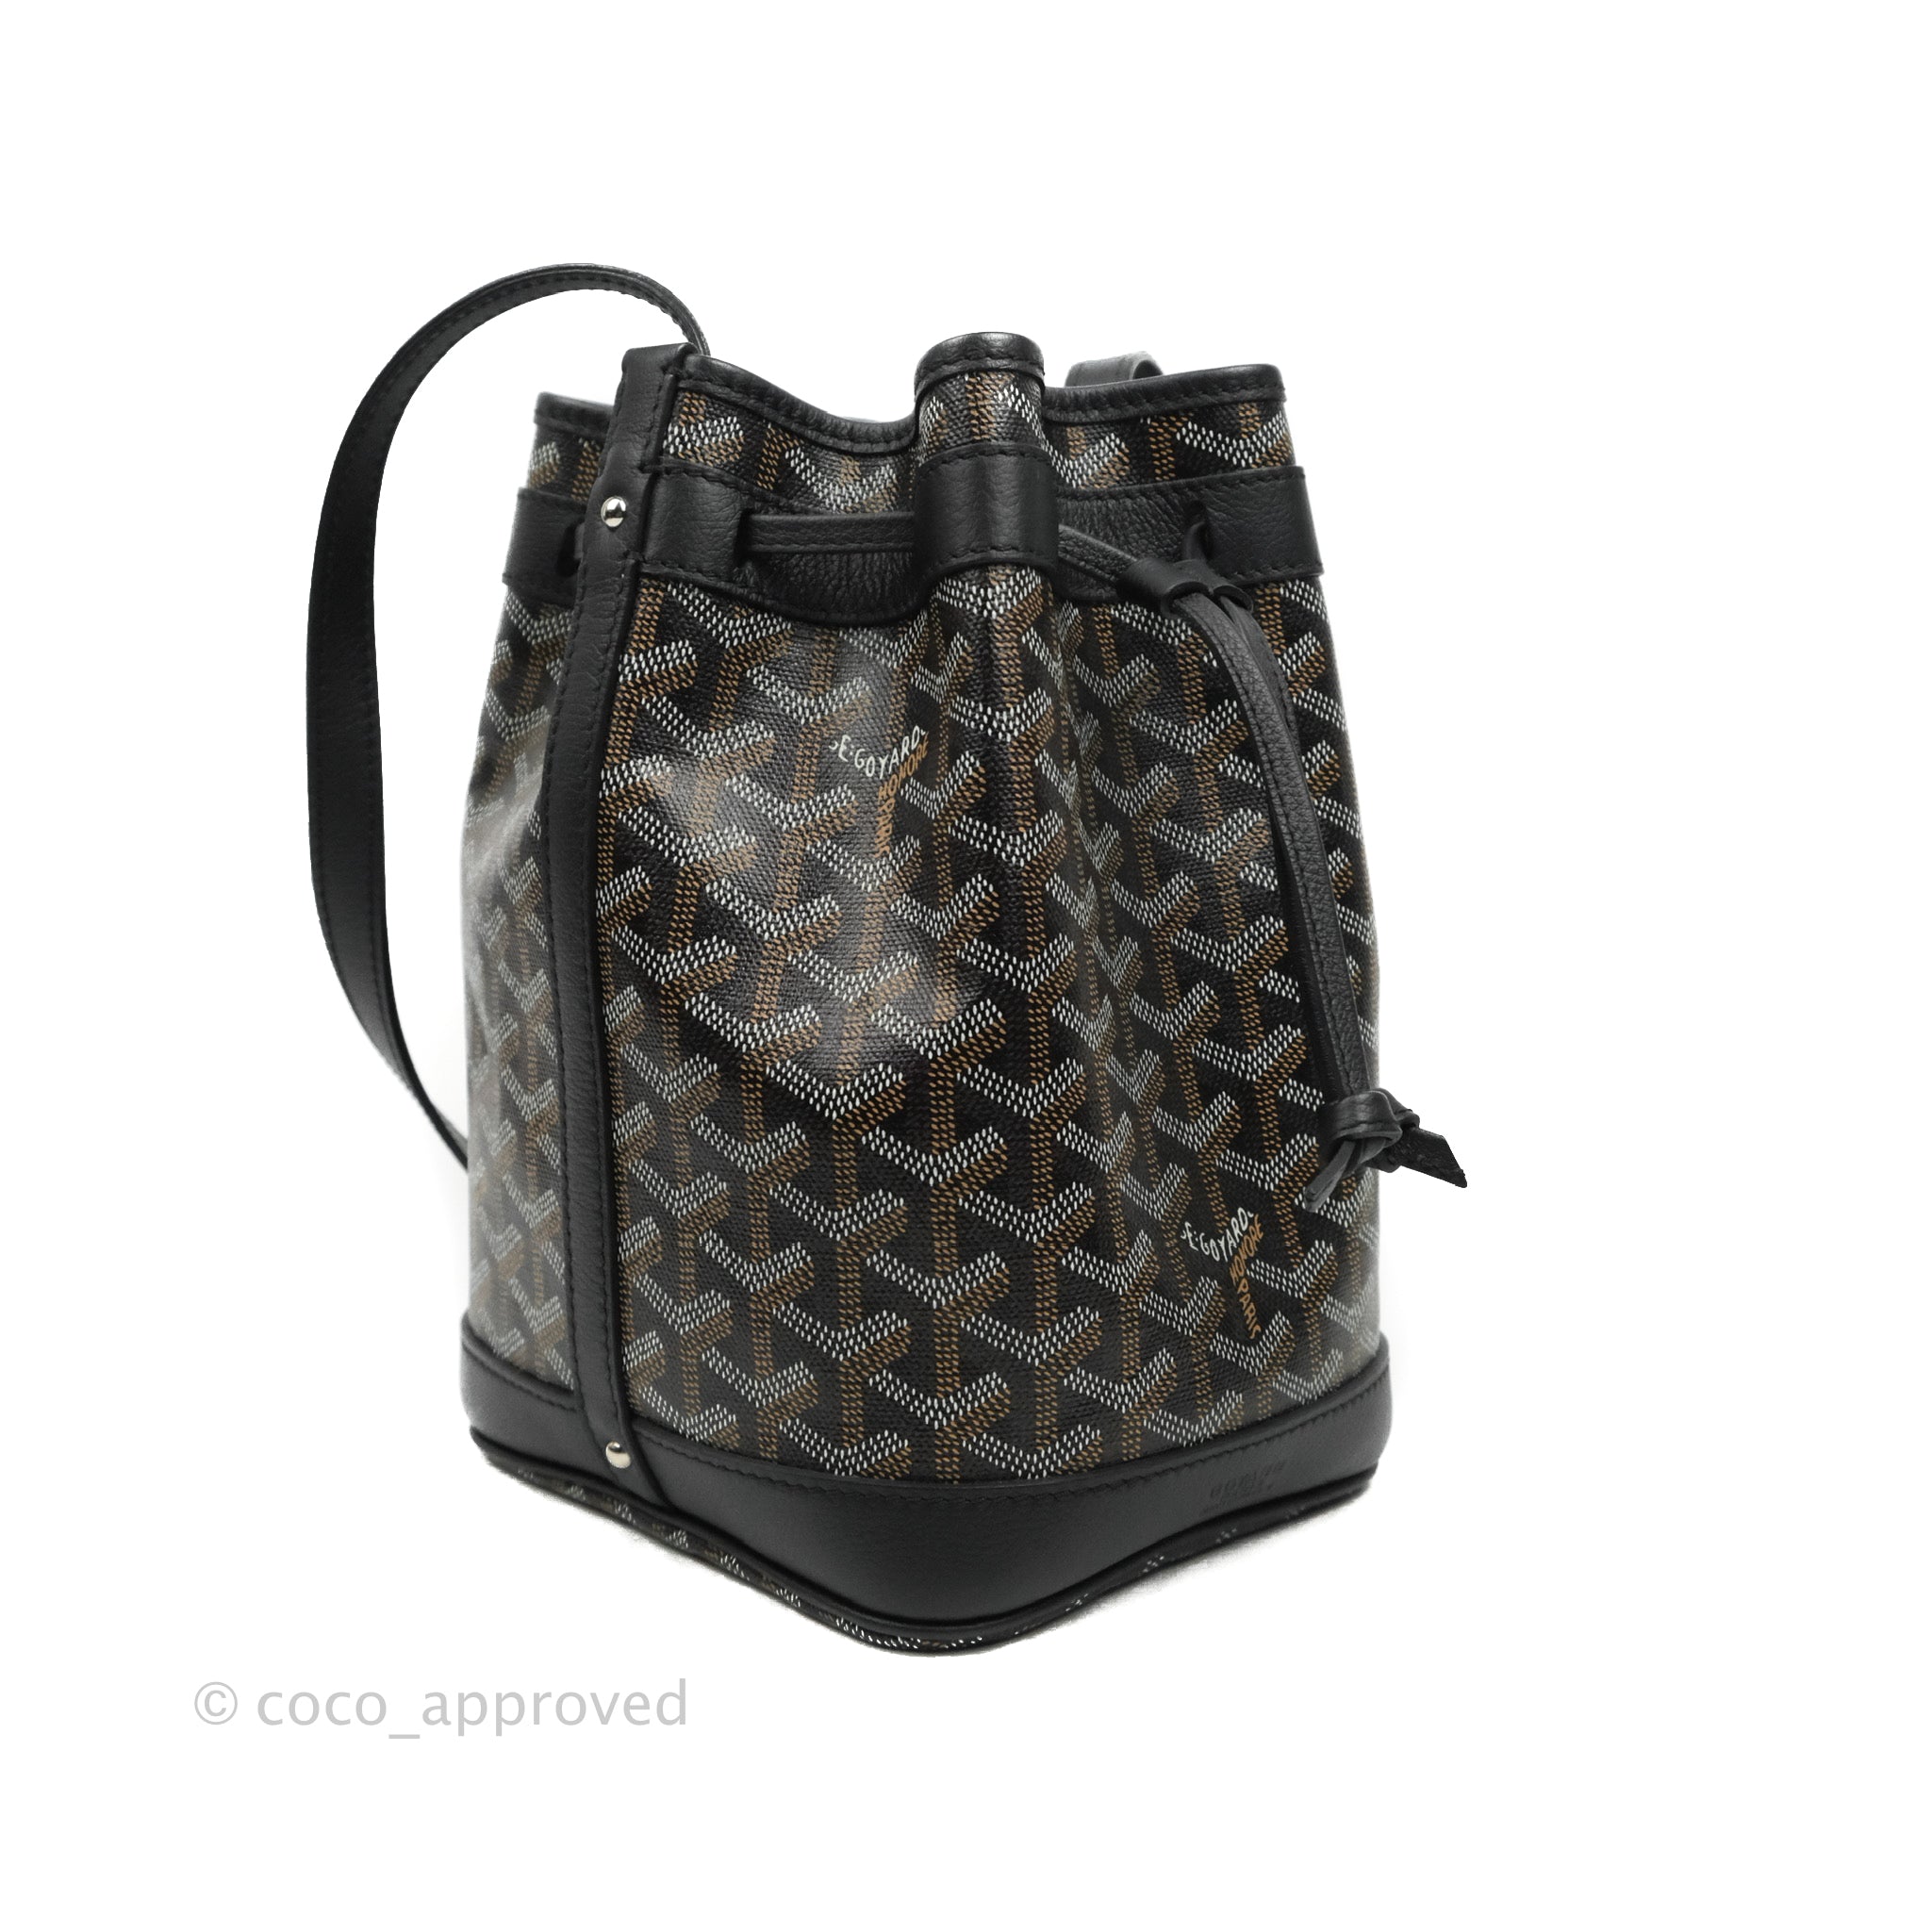 New* GOYARD Goyardine petit flot bucket bag – Lovestillore Shop